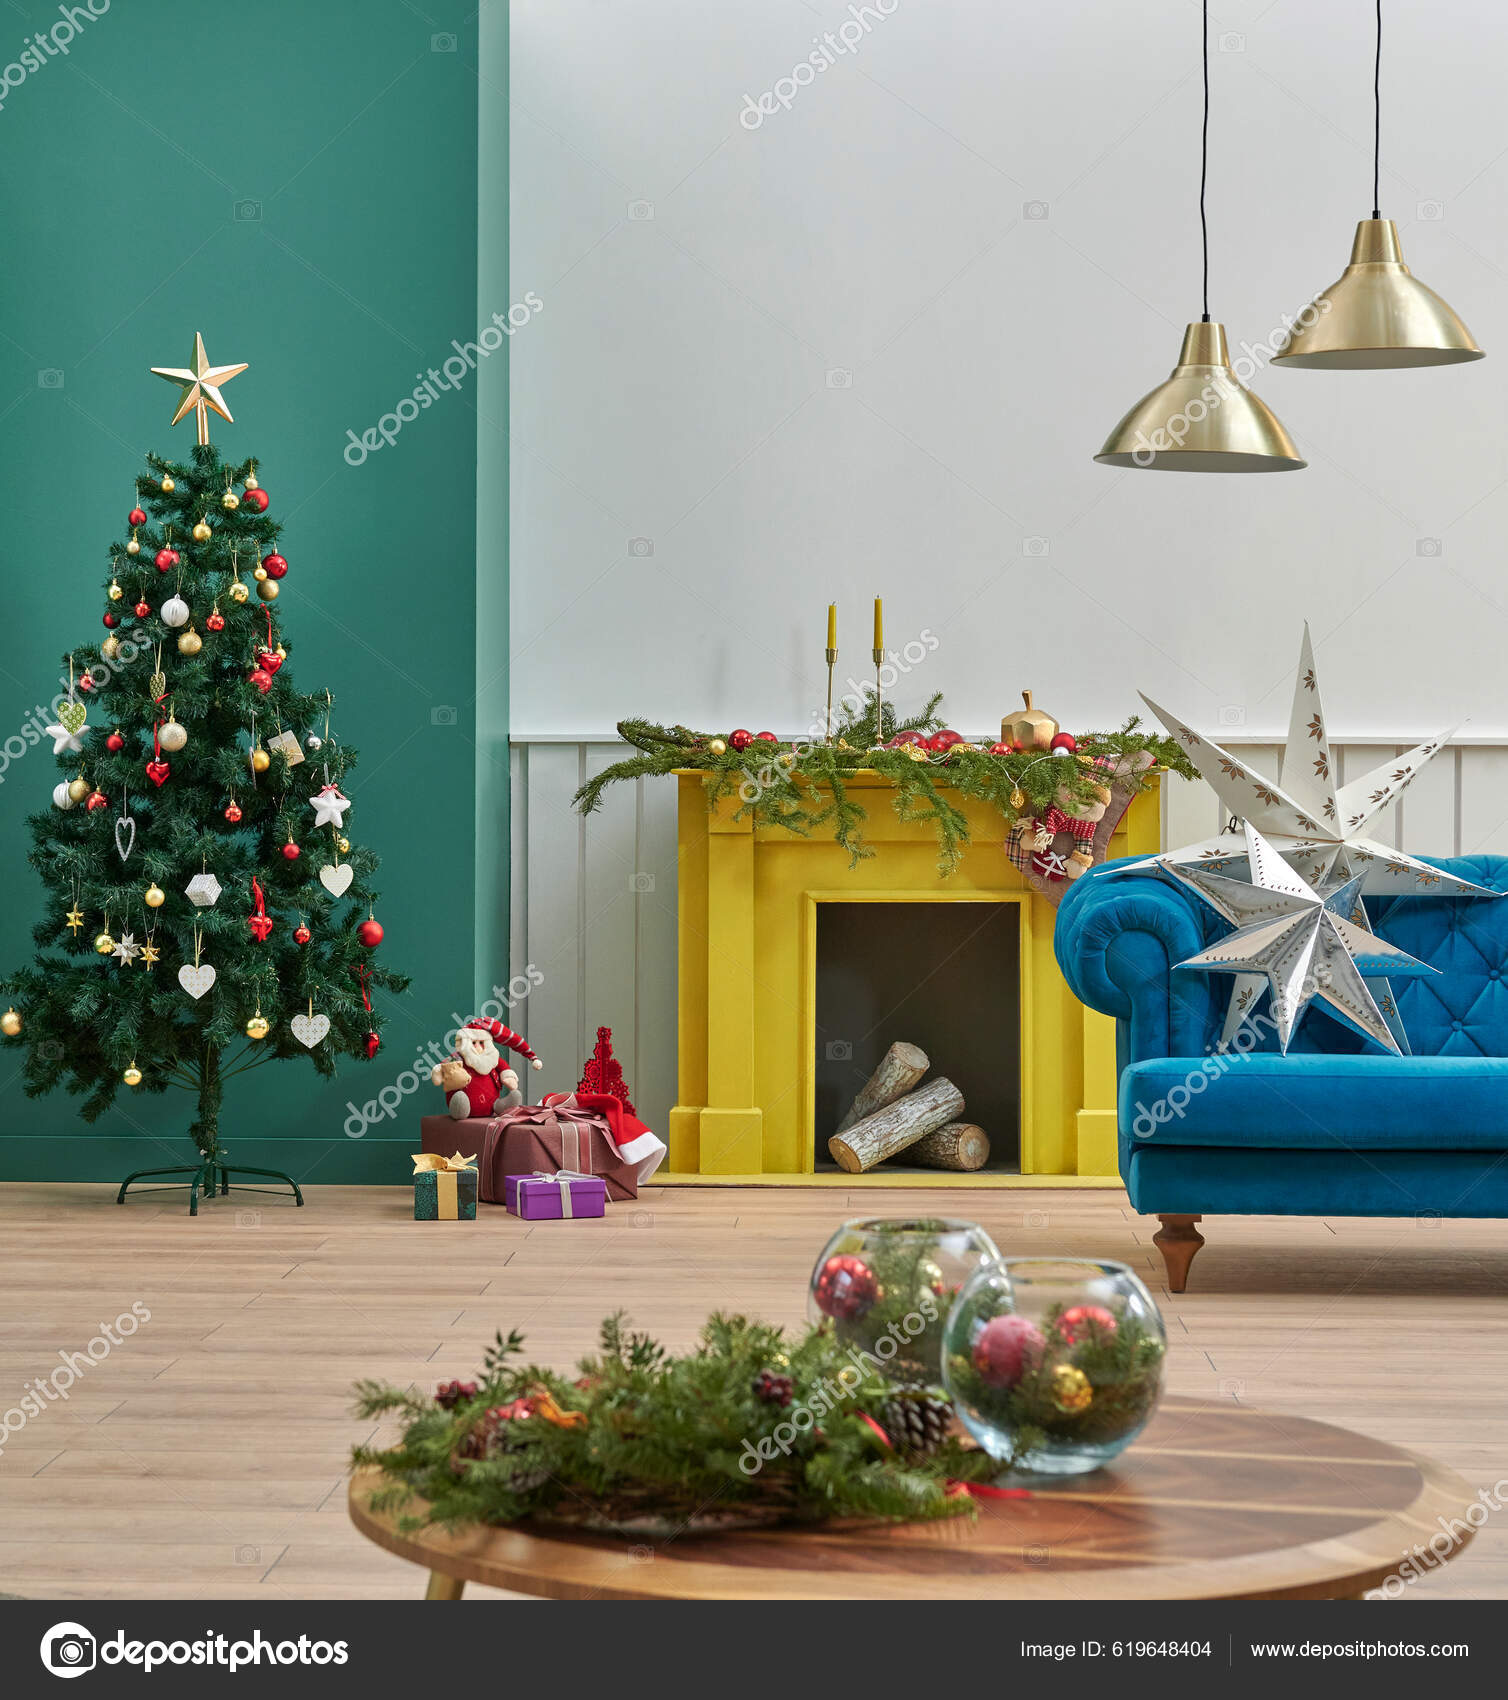 Grüne Und Weiße Wand Zimmer Glückliches Neues Jahr Konzept Weihnachtsbaum -  Stockfotografie: lizenzfreie Fotos © UnitedPhotoStudio 619648404